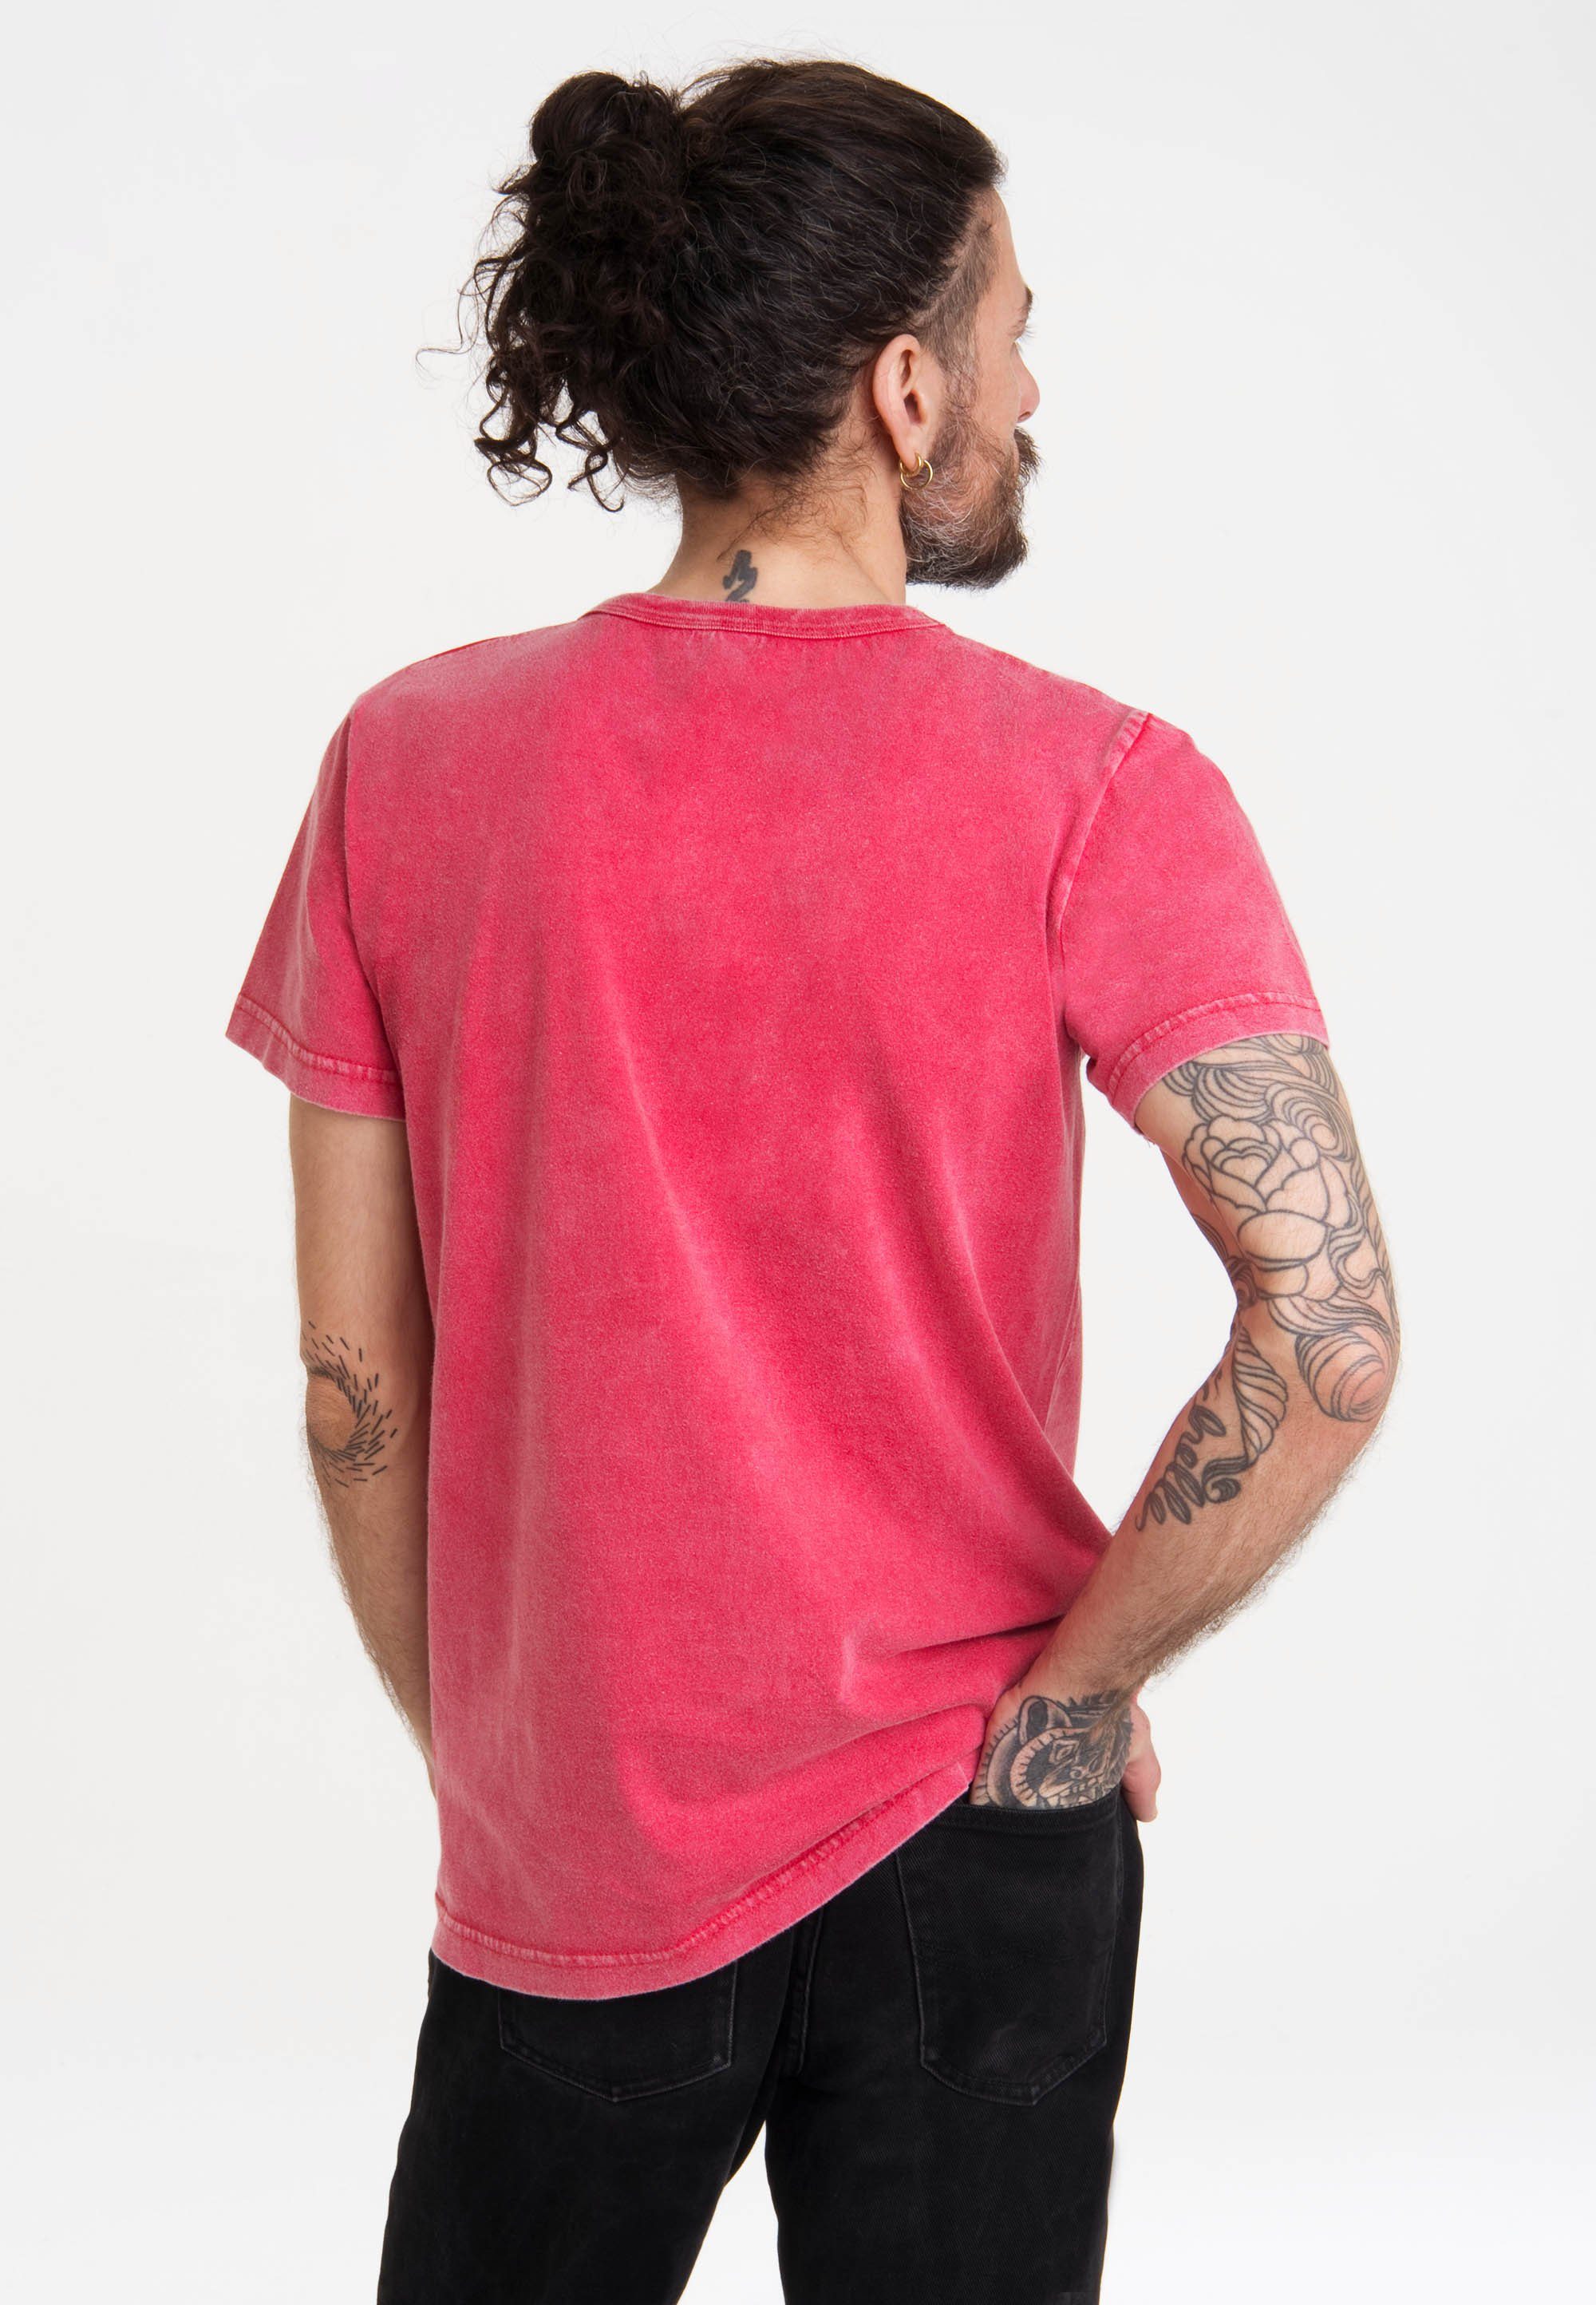 T-Shirt Speedy rot Print mit Gonzales LOGOSHIRT Looney - Tunes lizenziertem